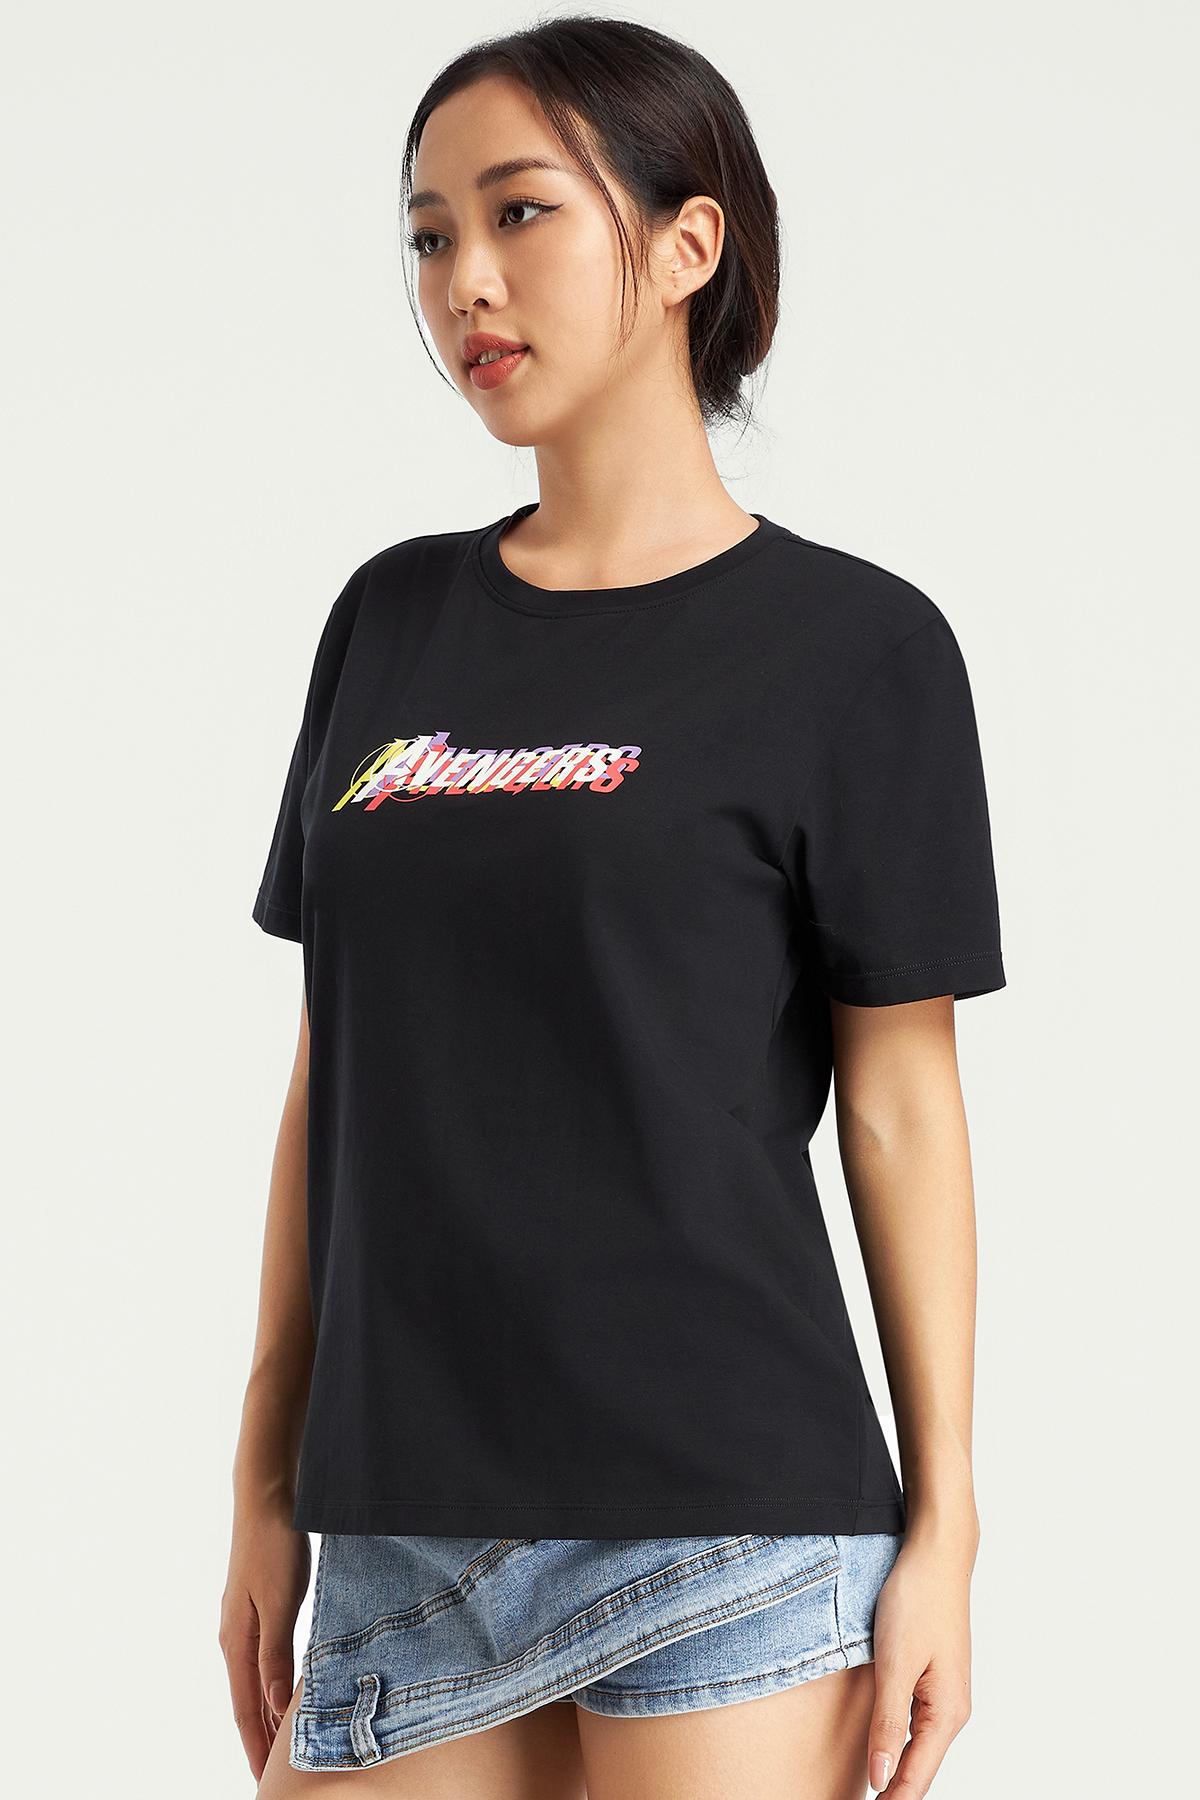 Áo t-shirt nữ Marvel cotton in điểm - D0011